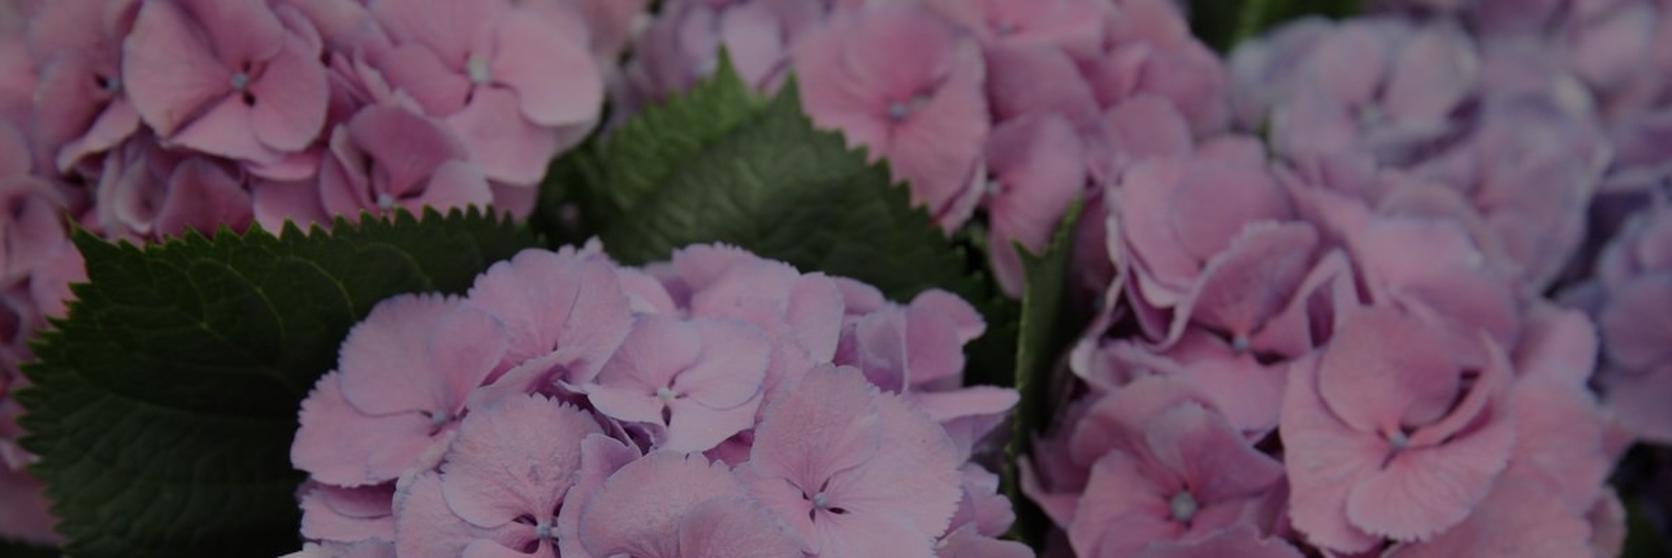 hydrangea-purple-flowers-bloom